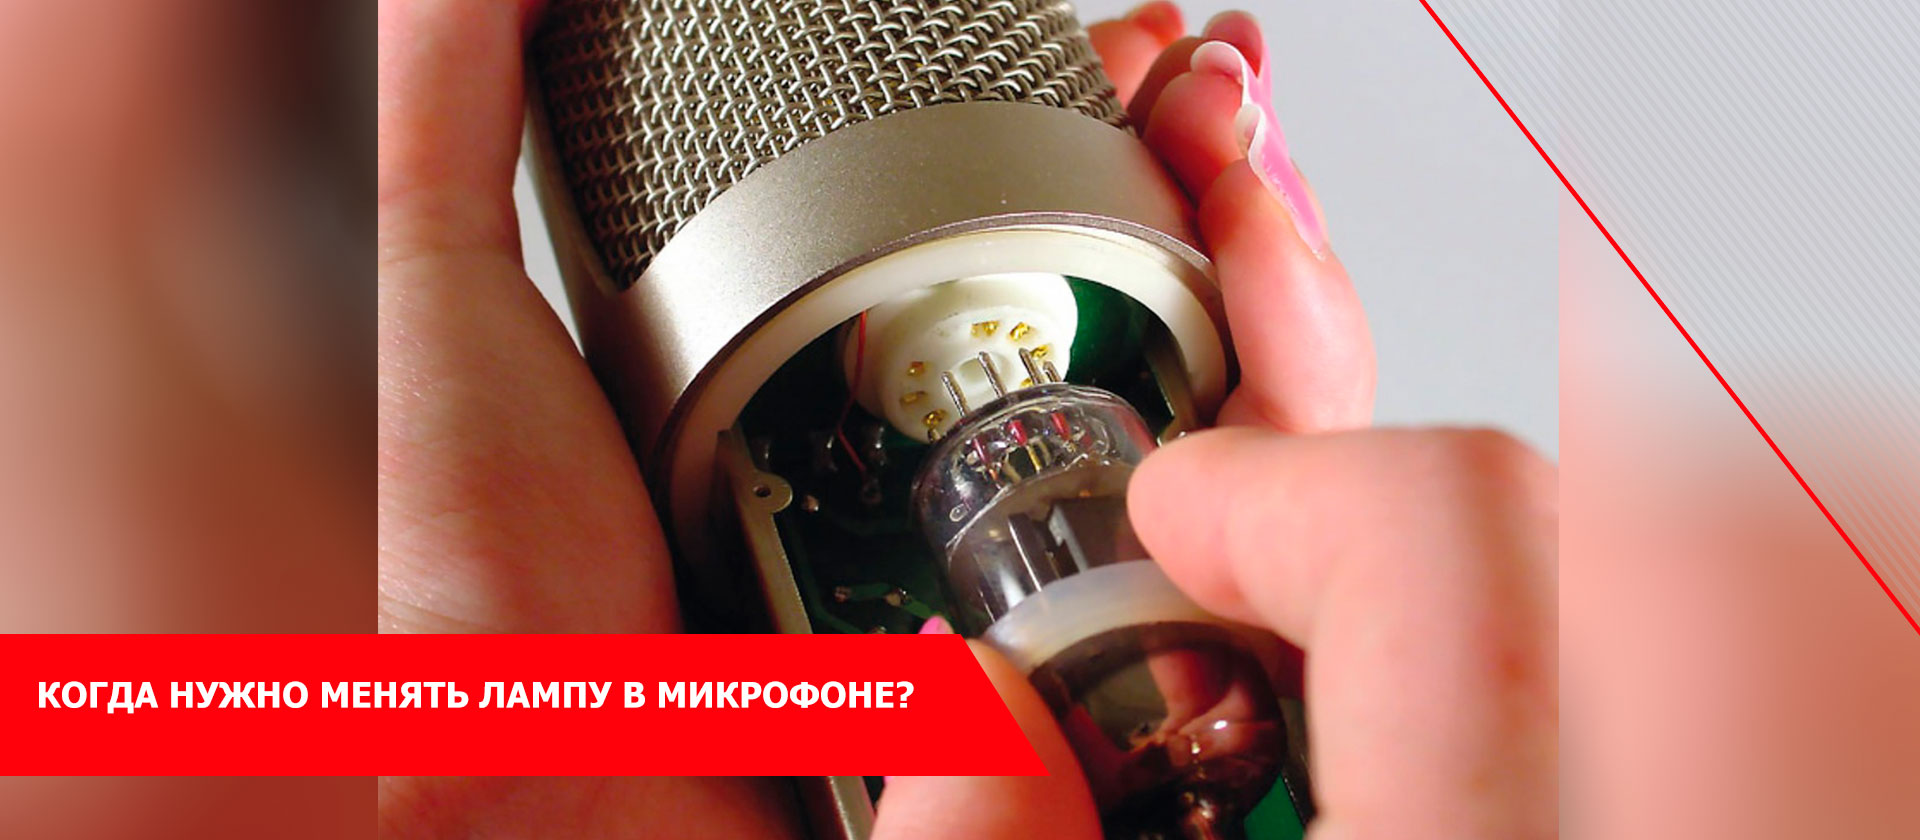 Когда нужно менять лампу в микрофоне?